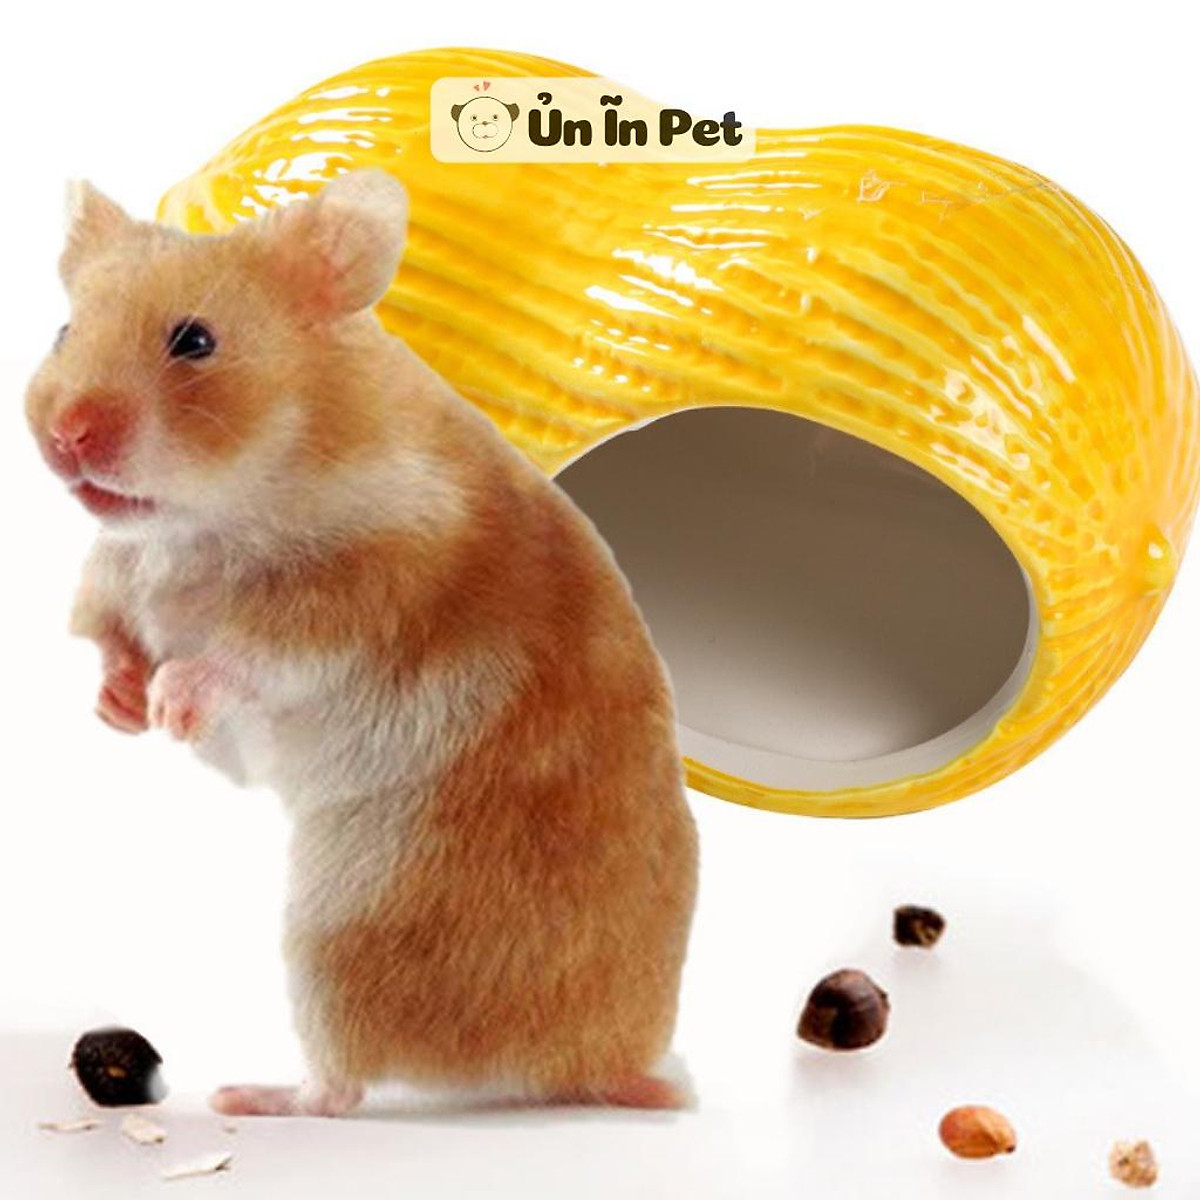 Nhà Ngủ Sứ Hamster Đậu Phộng Siêu Mát, Dễ Thương | Tiki